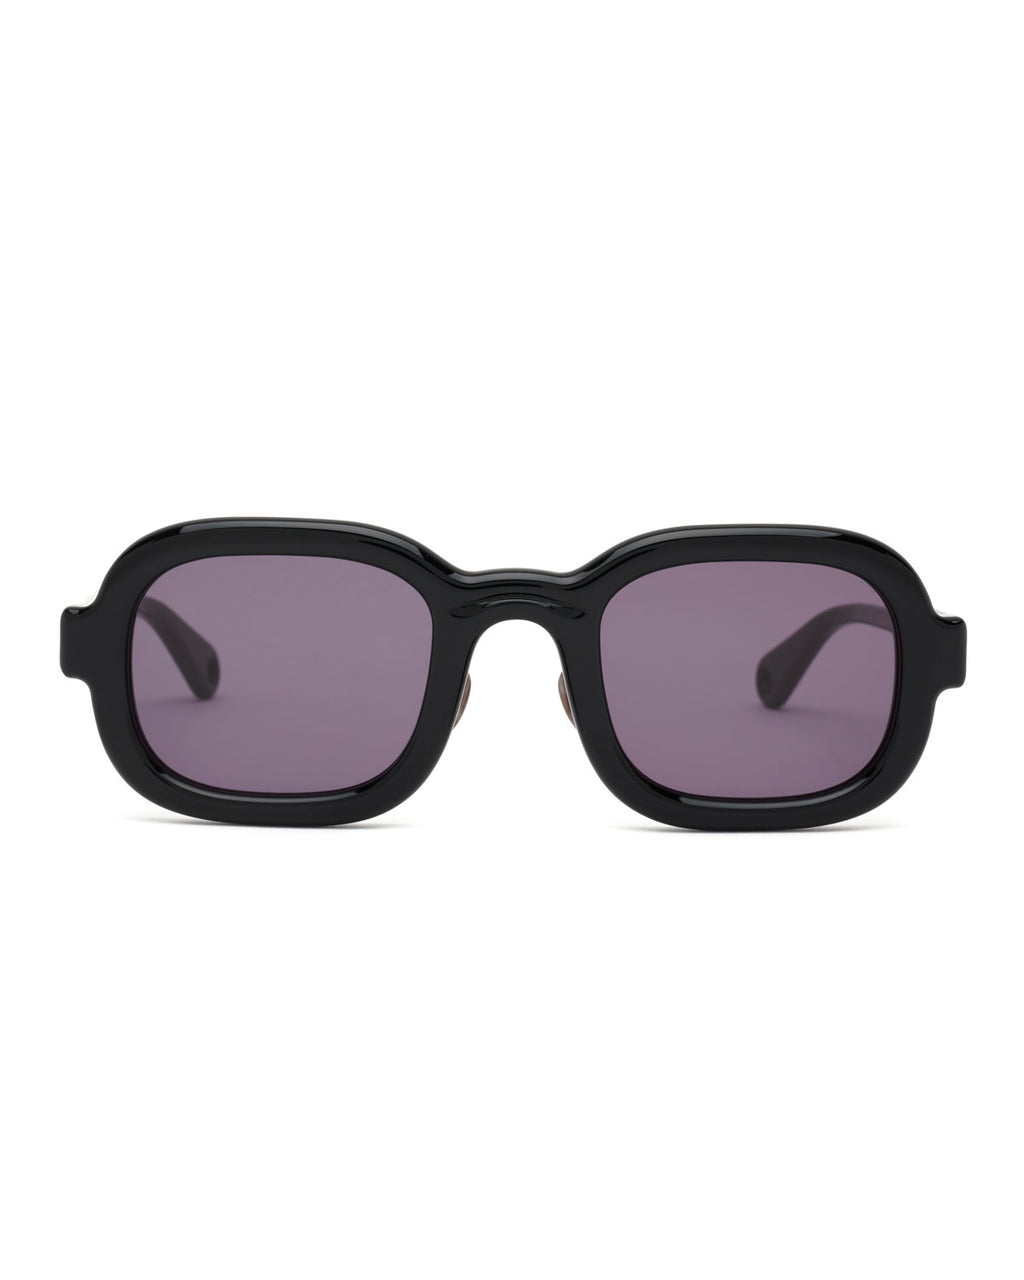 Newman Post Modern Primitive Eye Protection - Black